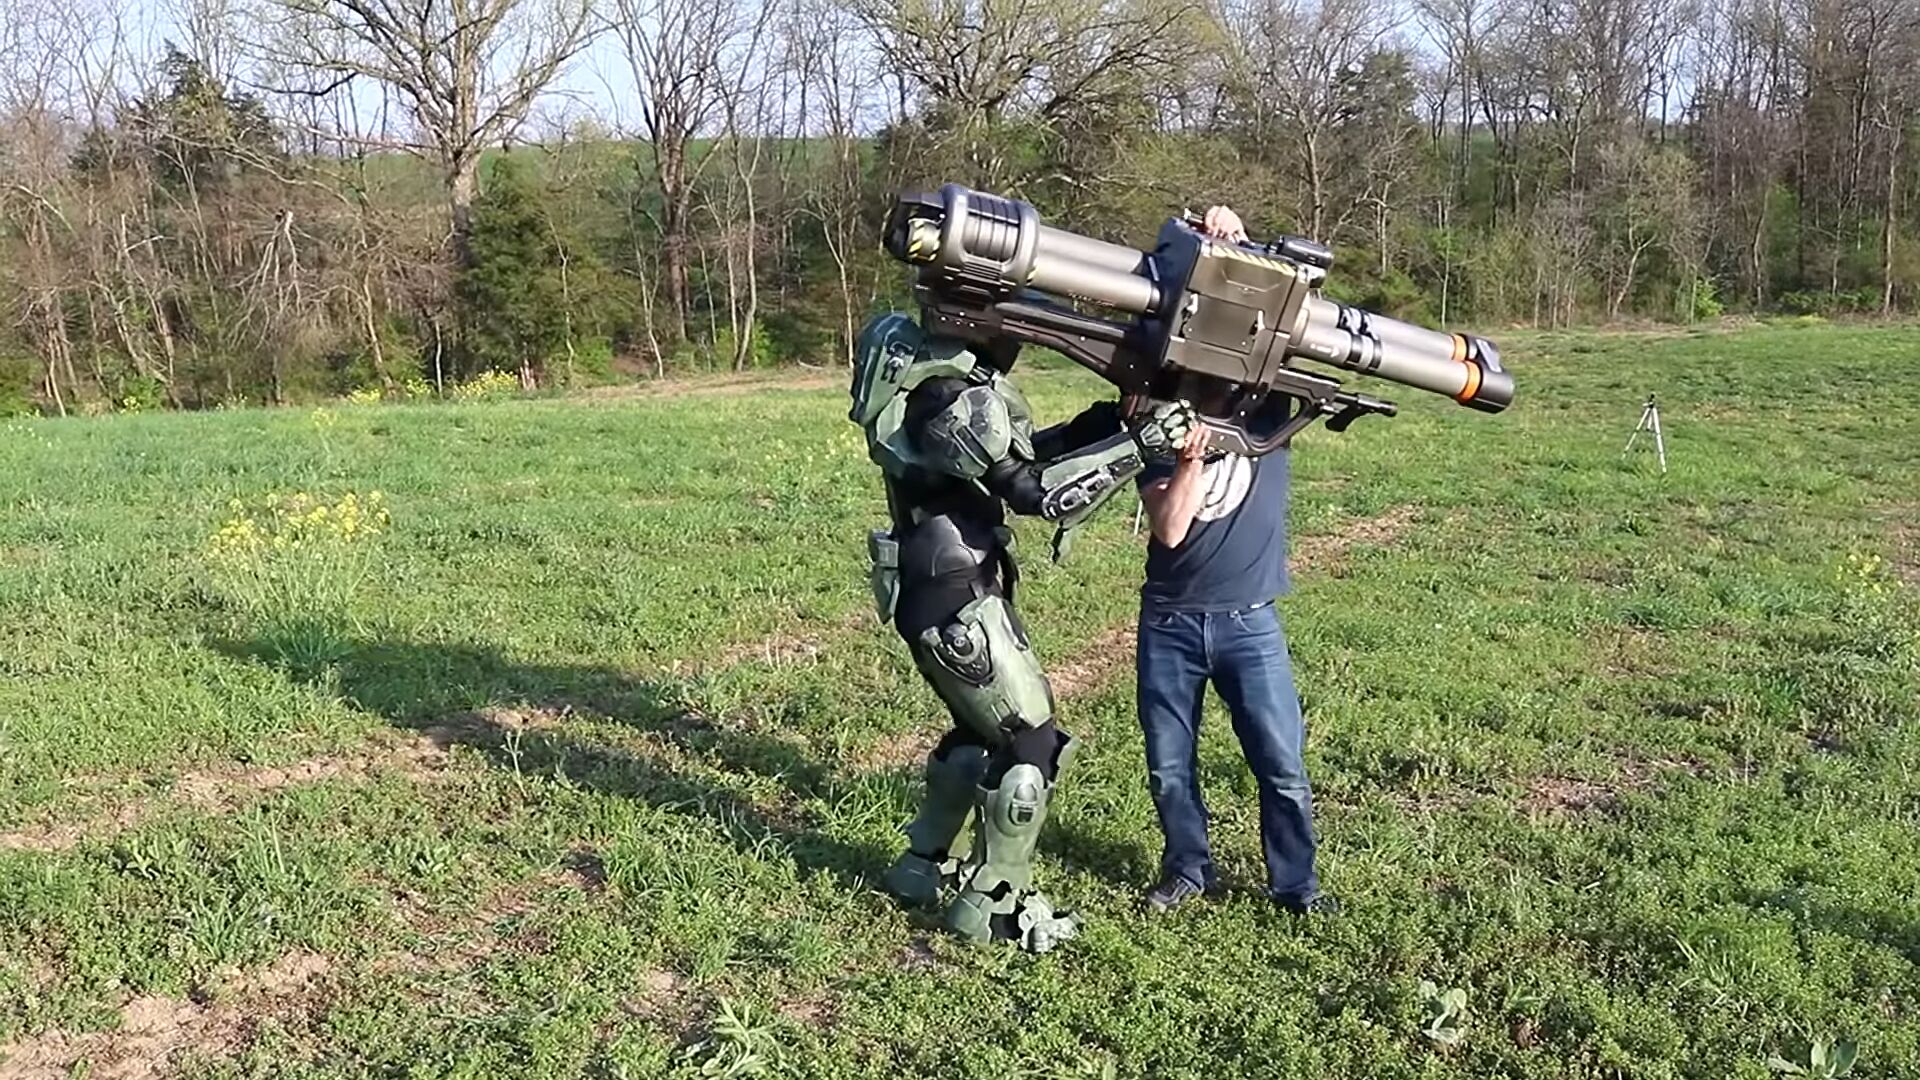 Un ingegnere ha ricreato un lanciarazzi con canne rotanti dal gioco Halo